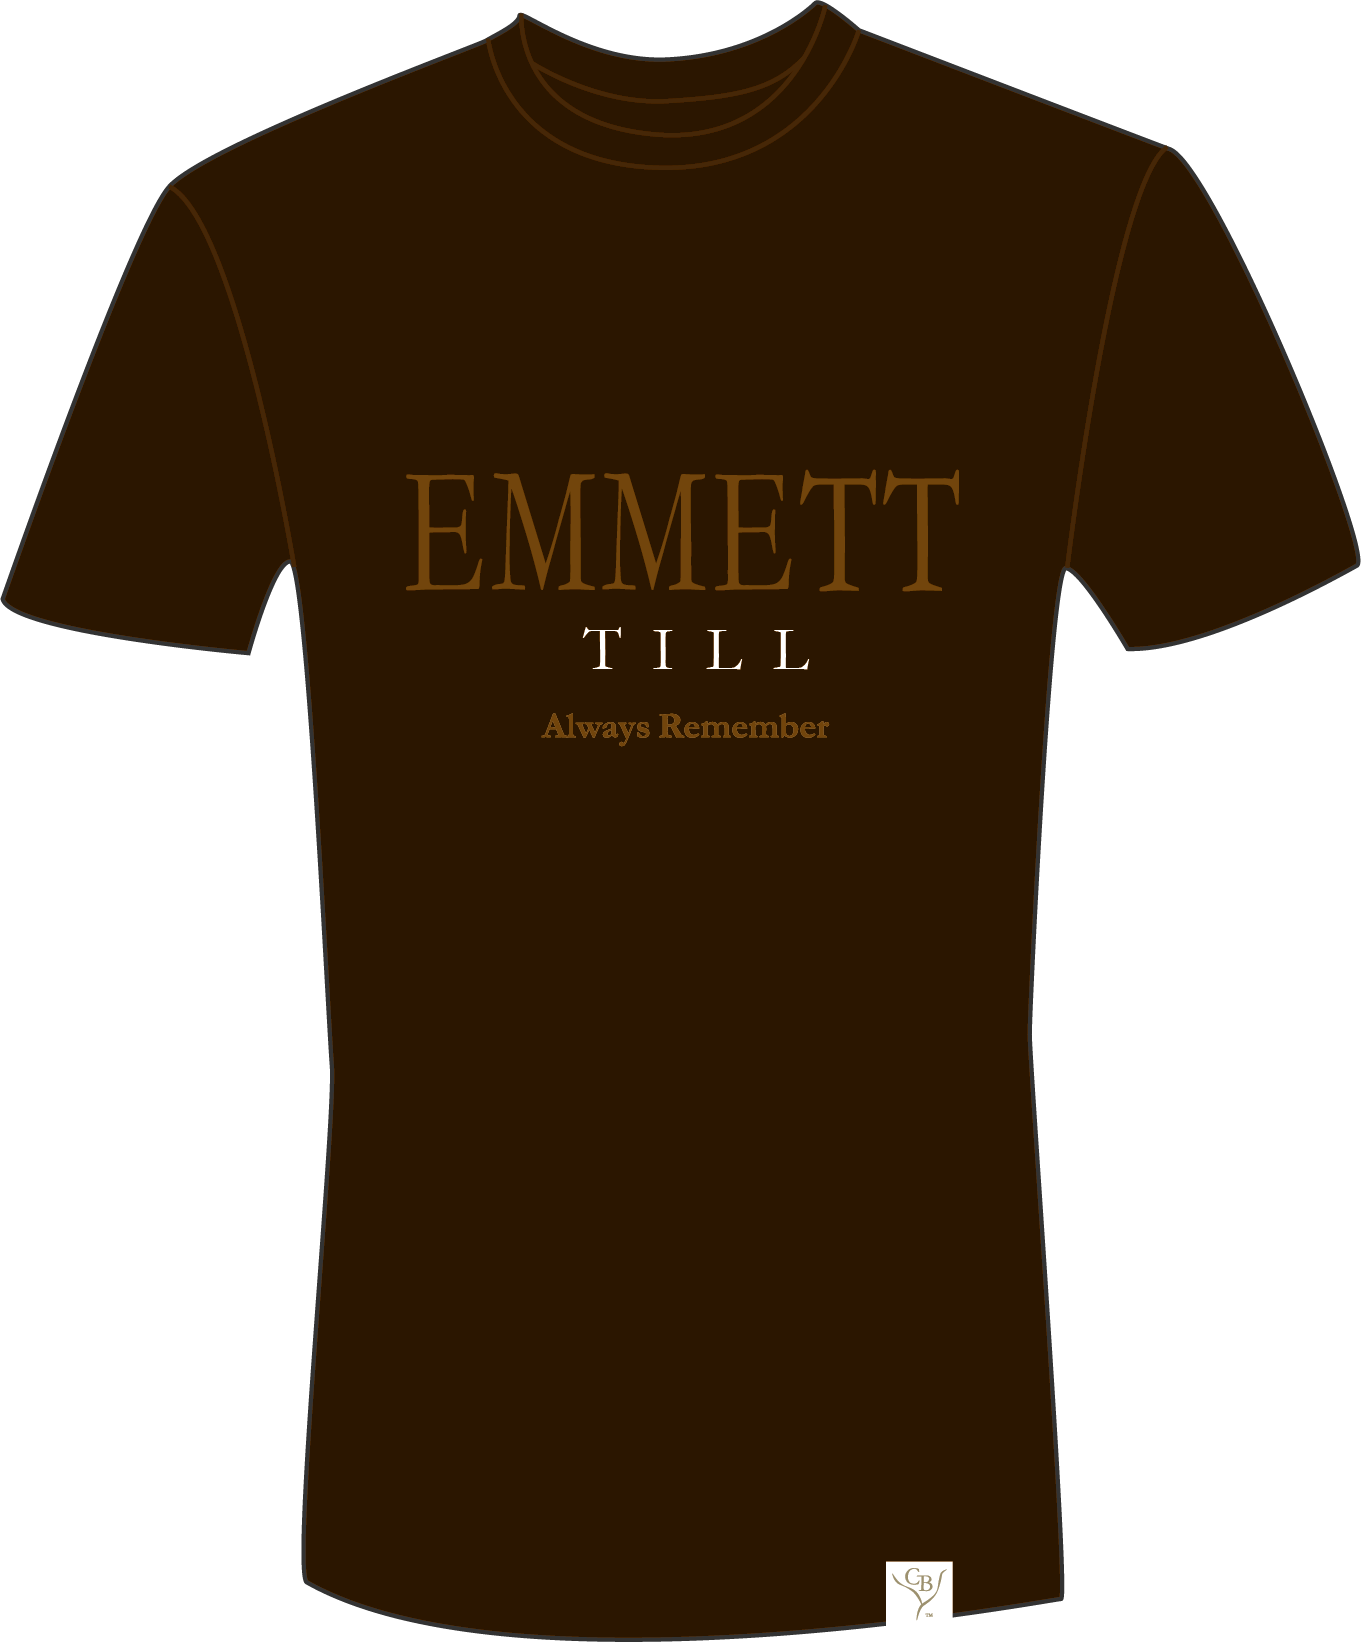 The Emmett